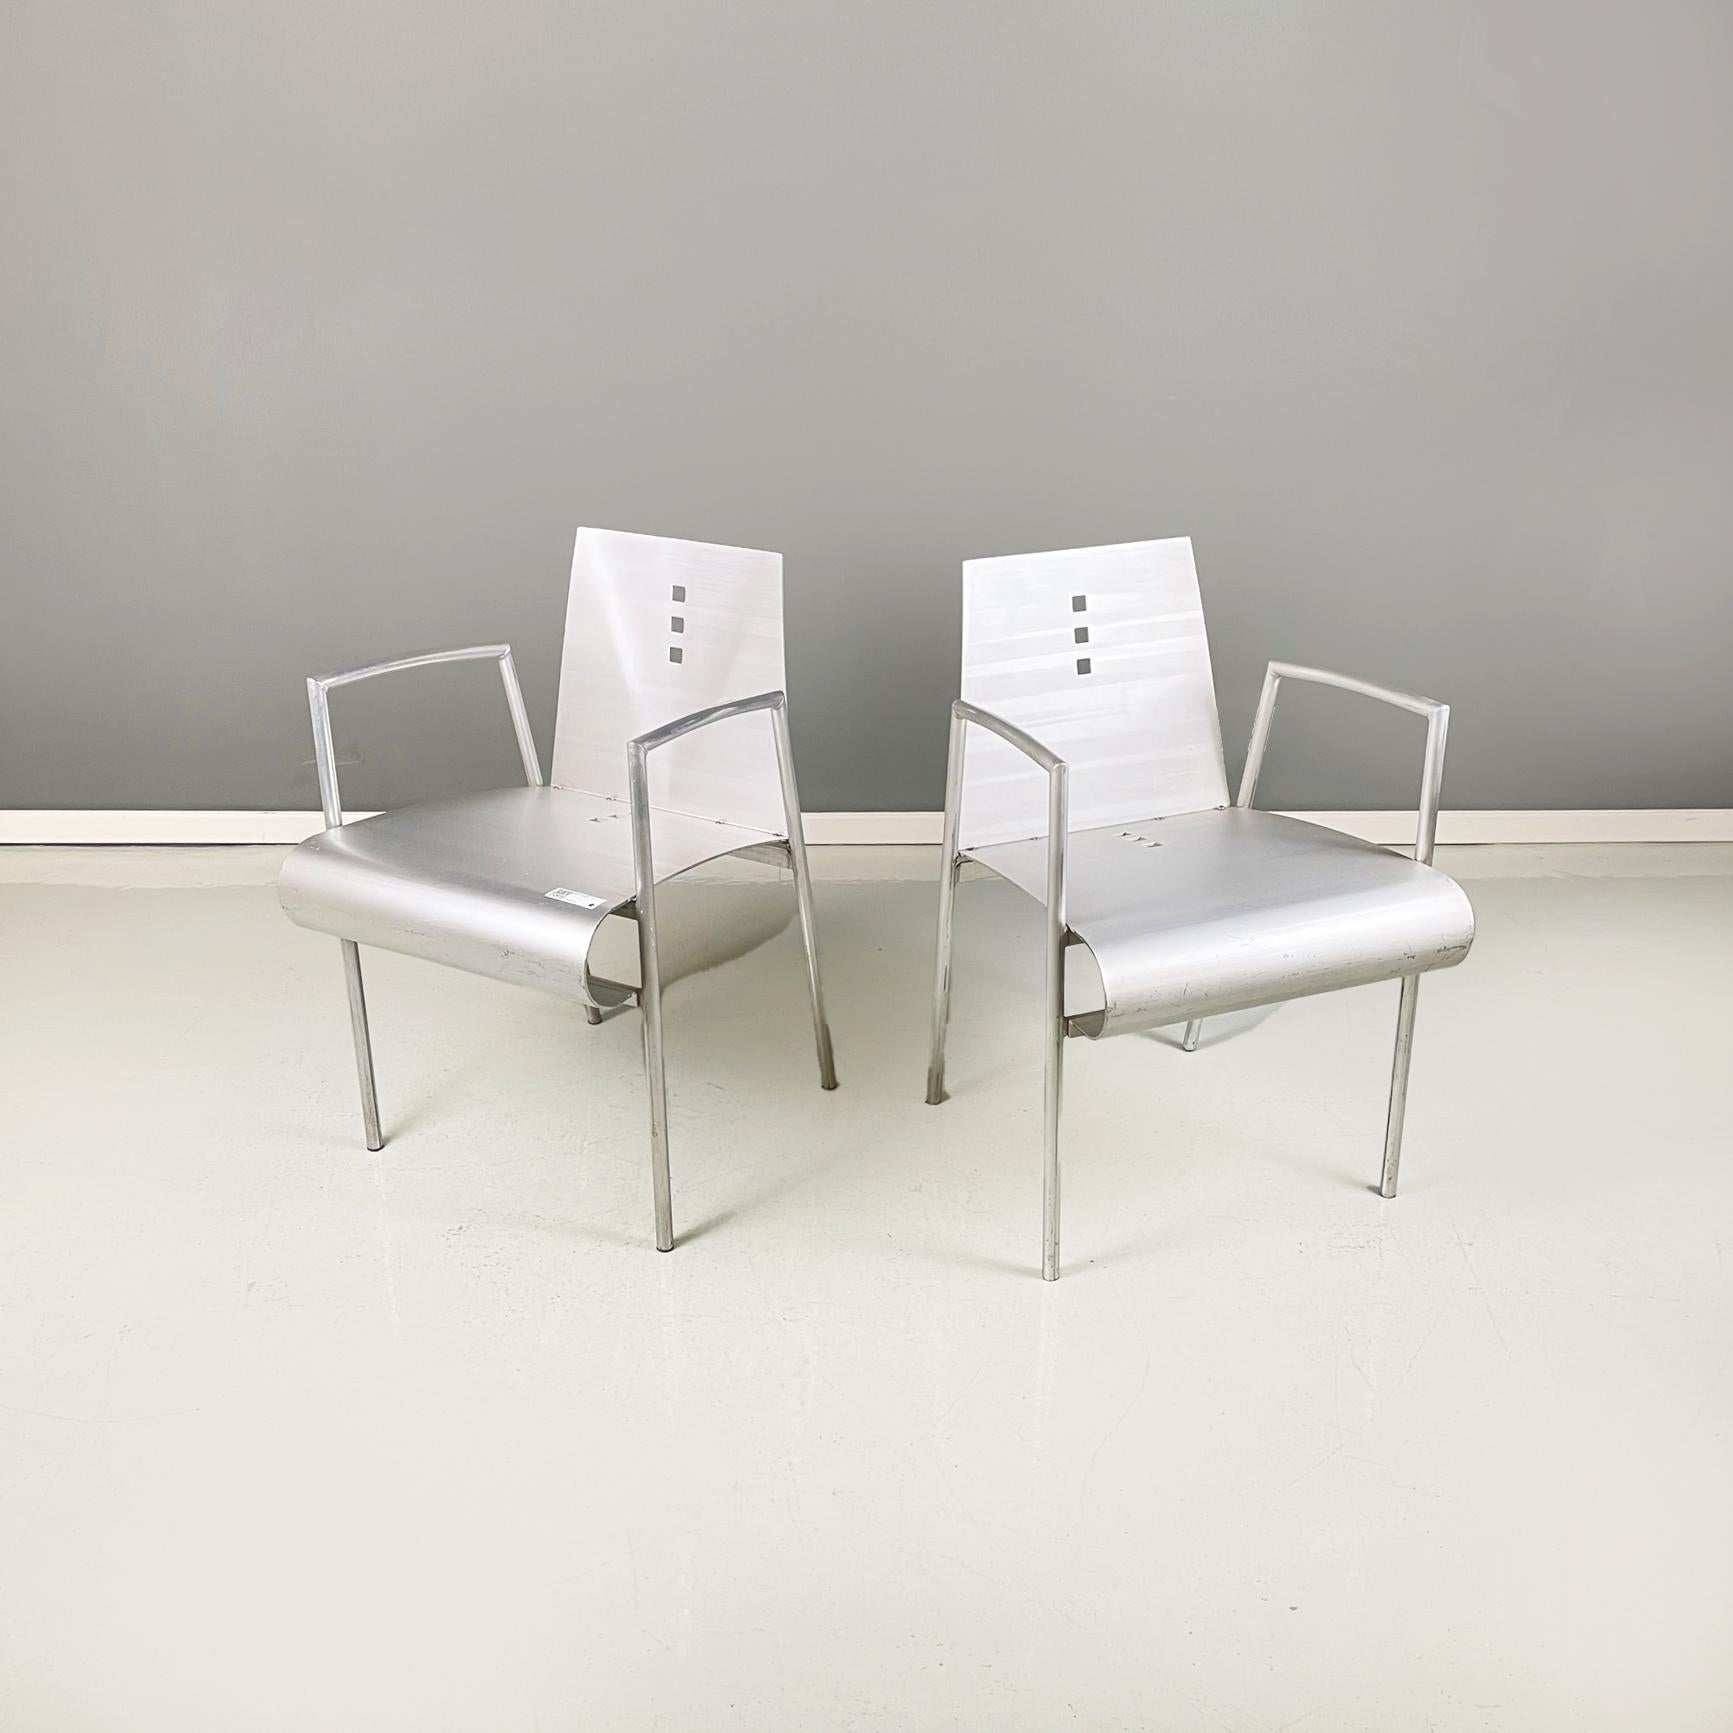 Moderne italienische geschwungene Metallstühle mit Armlehnen, 1980er Jahre
Paar Stühle mit gebogenem Sitz und Rückenlehne aus Metall. Die Beine und Armlehnen sind aus Metallrohr gefertigt.
1980s
Sehr guter Zustand, sie haben leichte verstreute